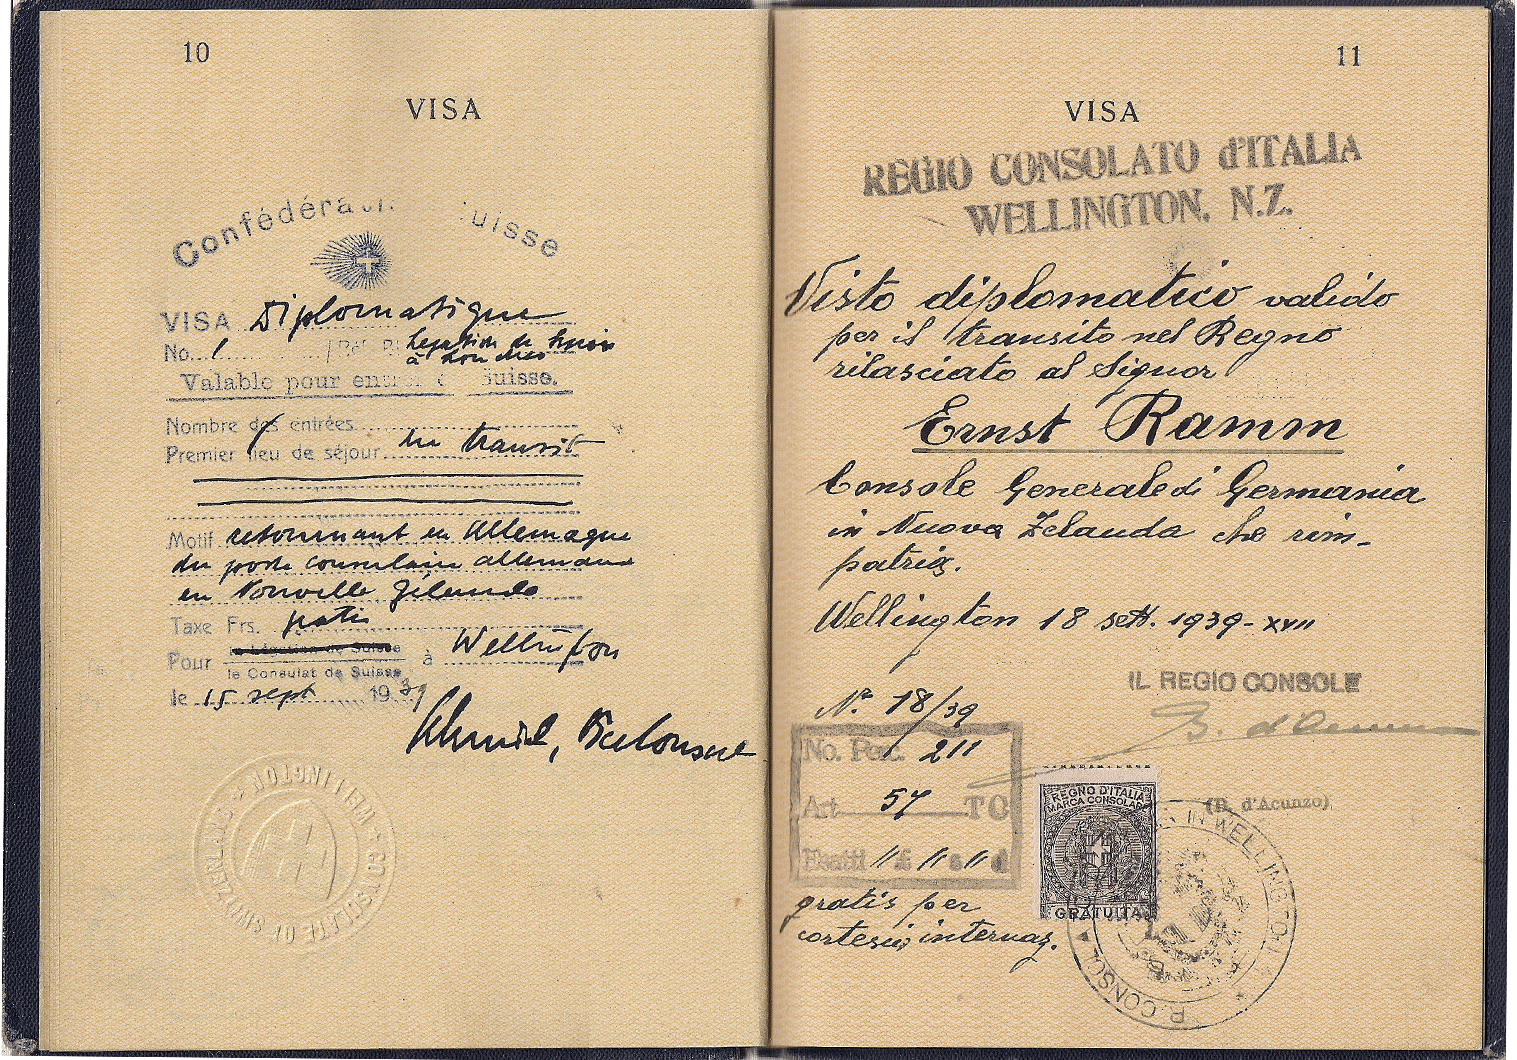 WW2 diplomatic visa